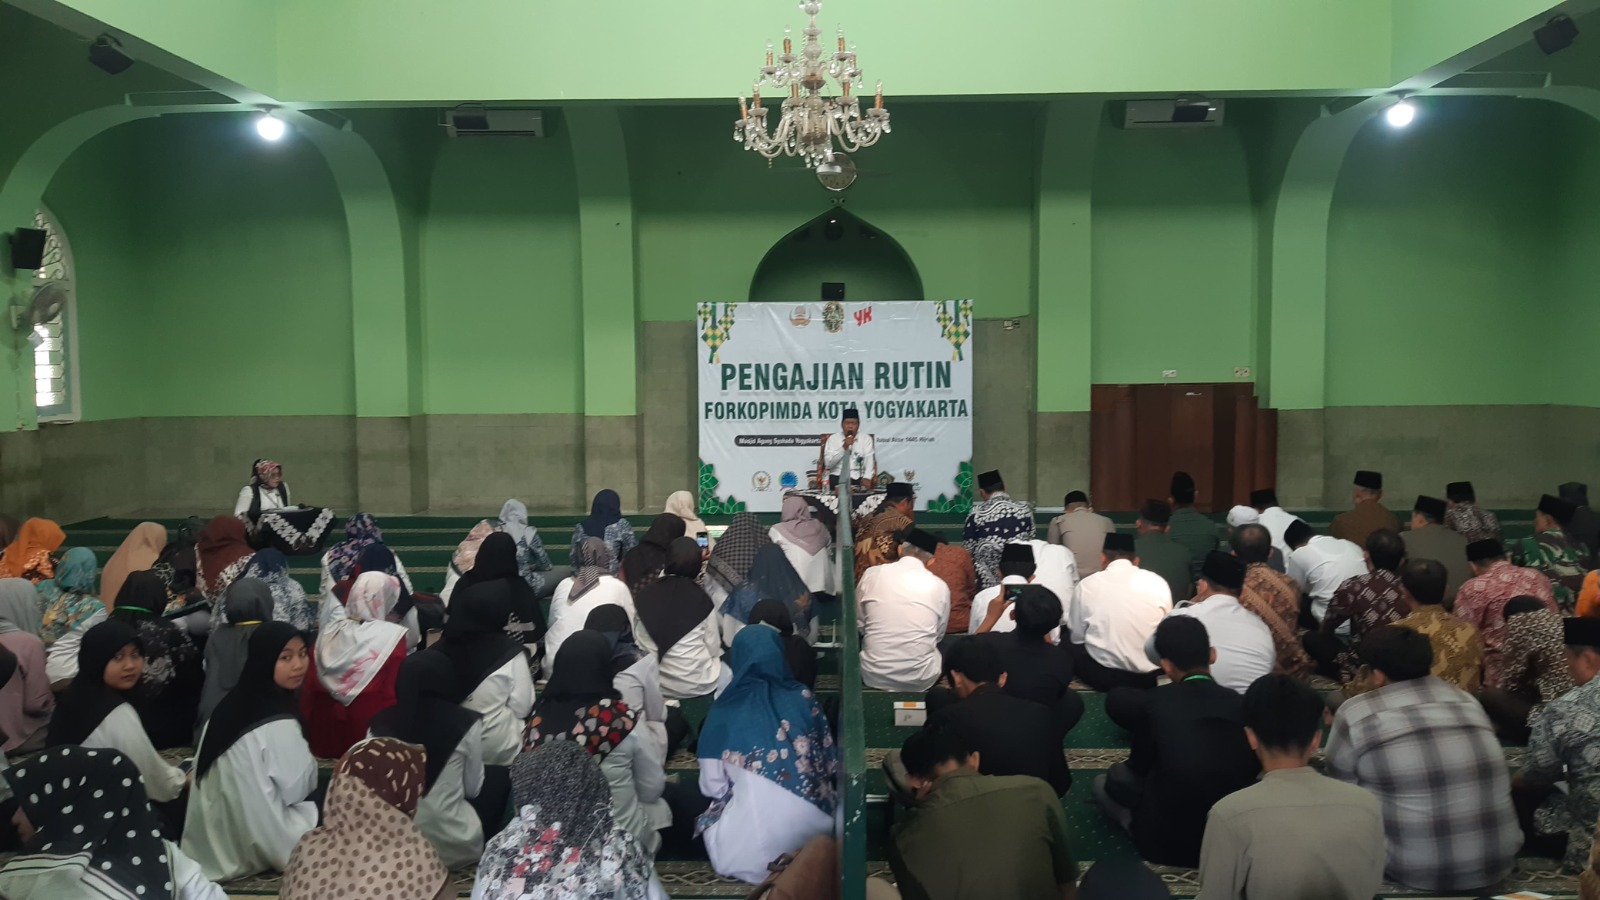 Pengadilan Negeri Yogyakarta Mengikuti Pengajian Rutin Forkopimda Kota Yogyakarta